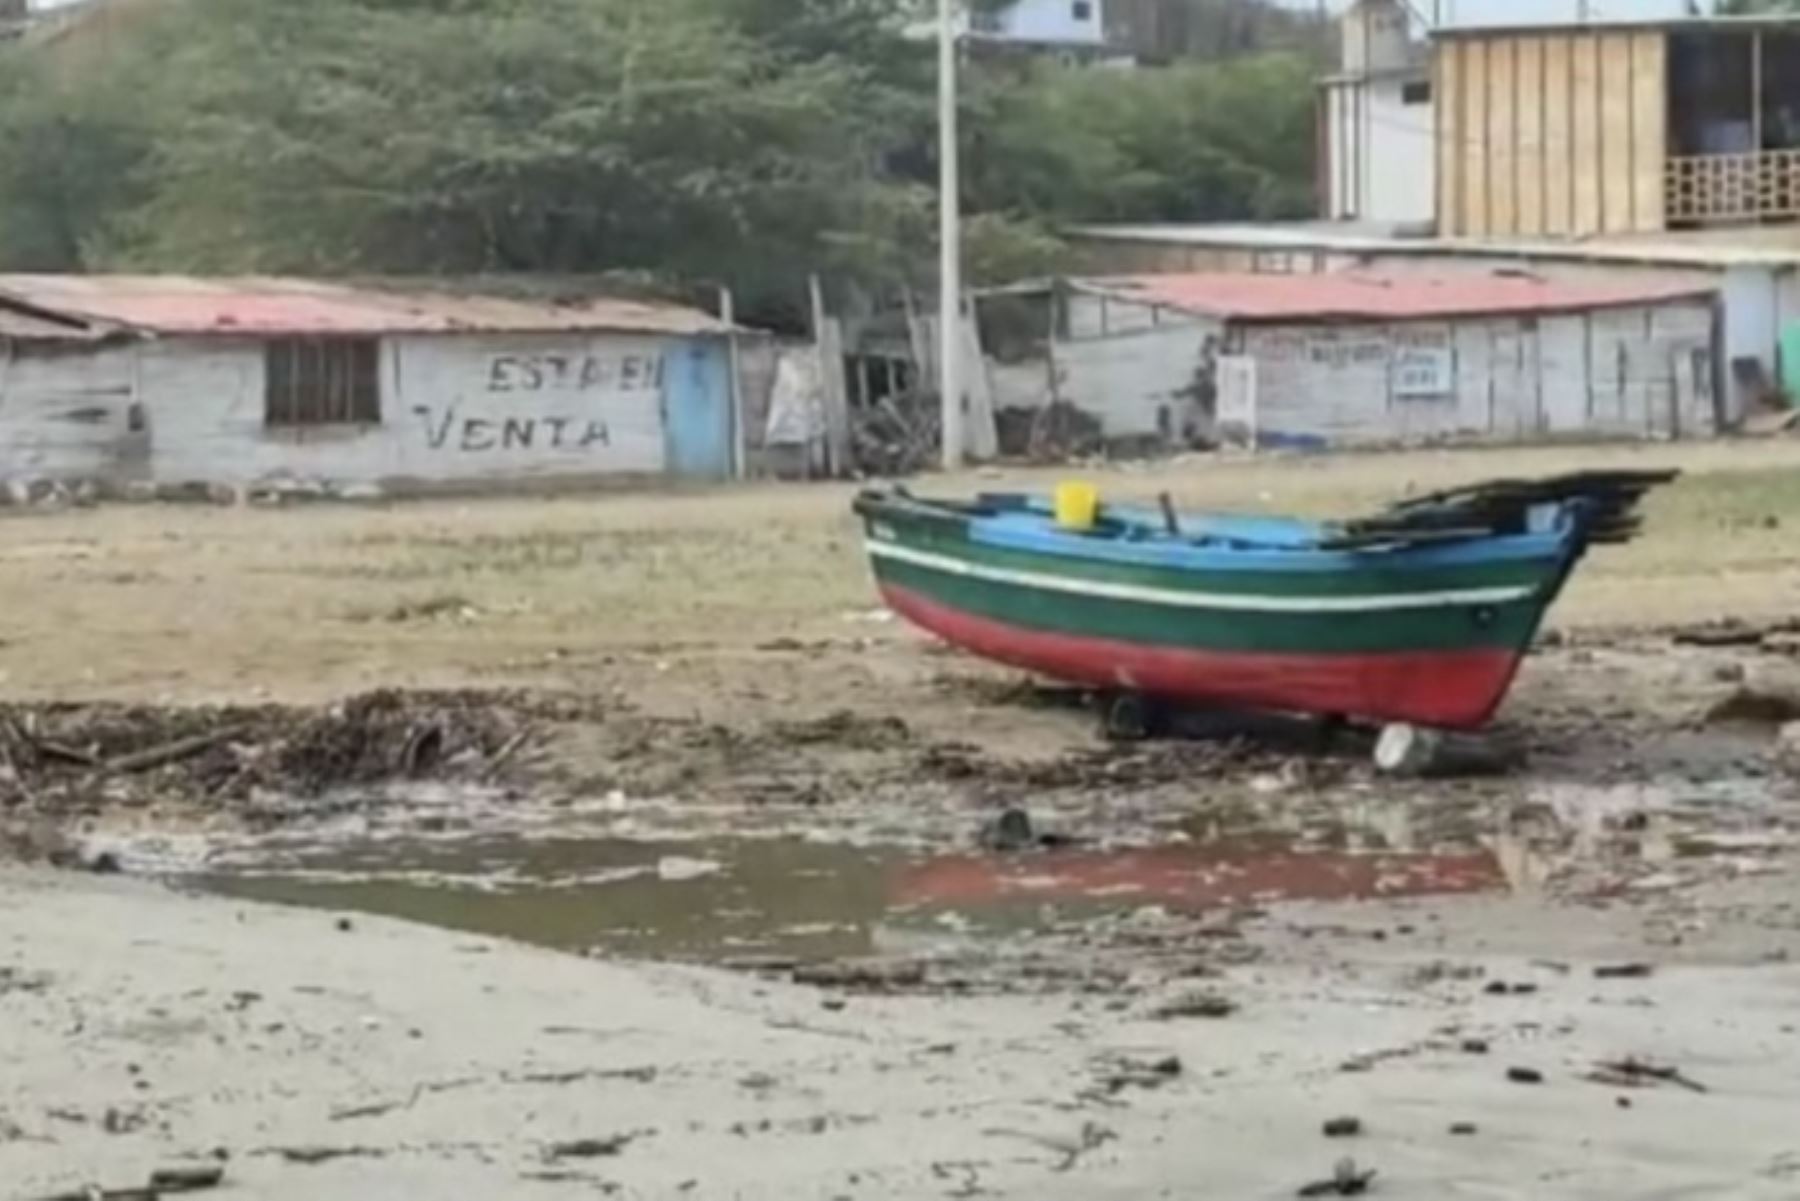 Oleajes ligeros a fuertes obligan a cerrar 69 puertos de todo el litoral